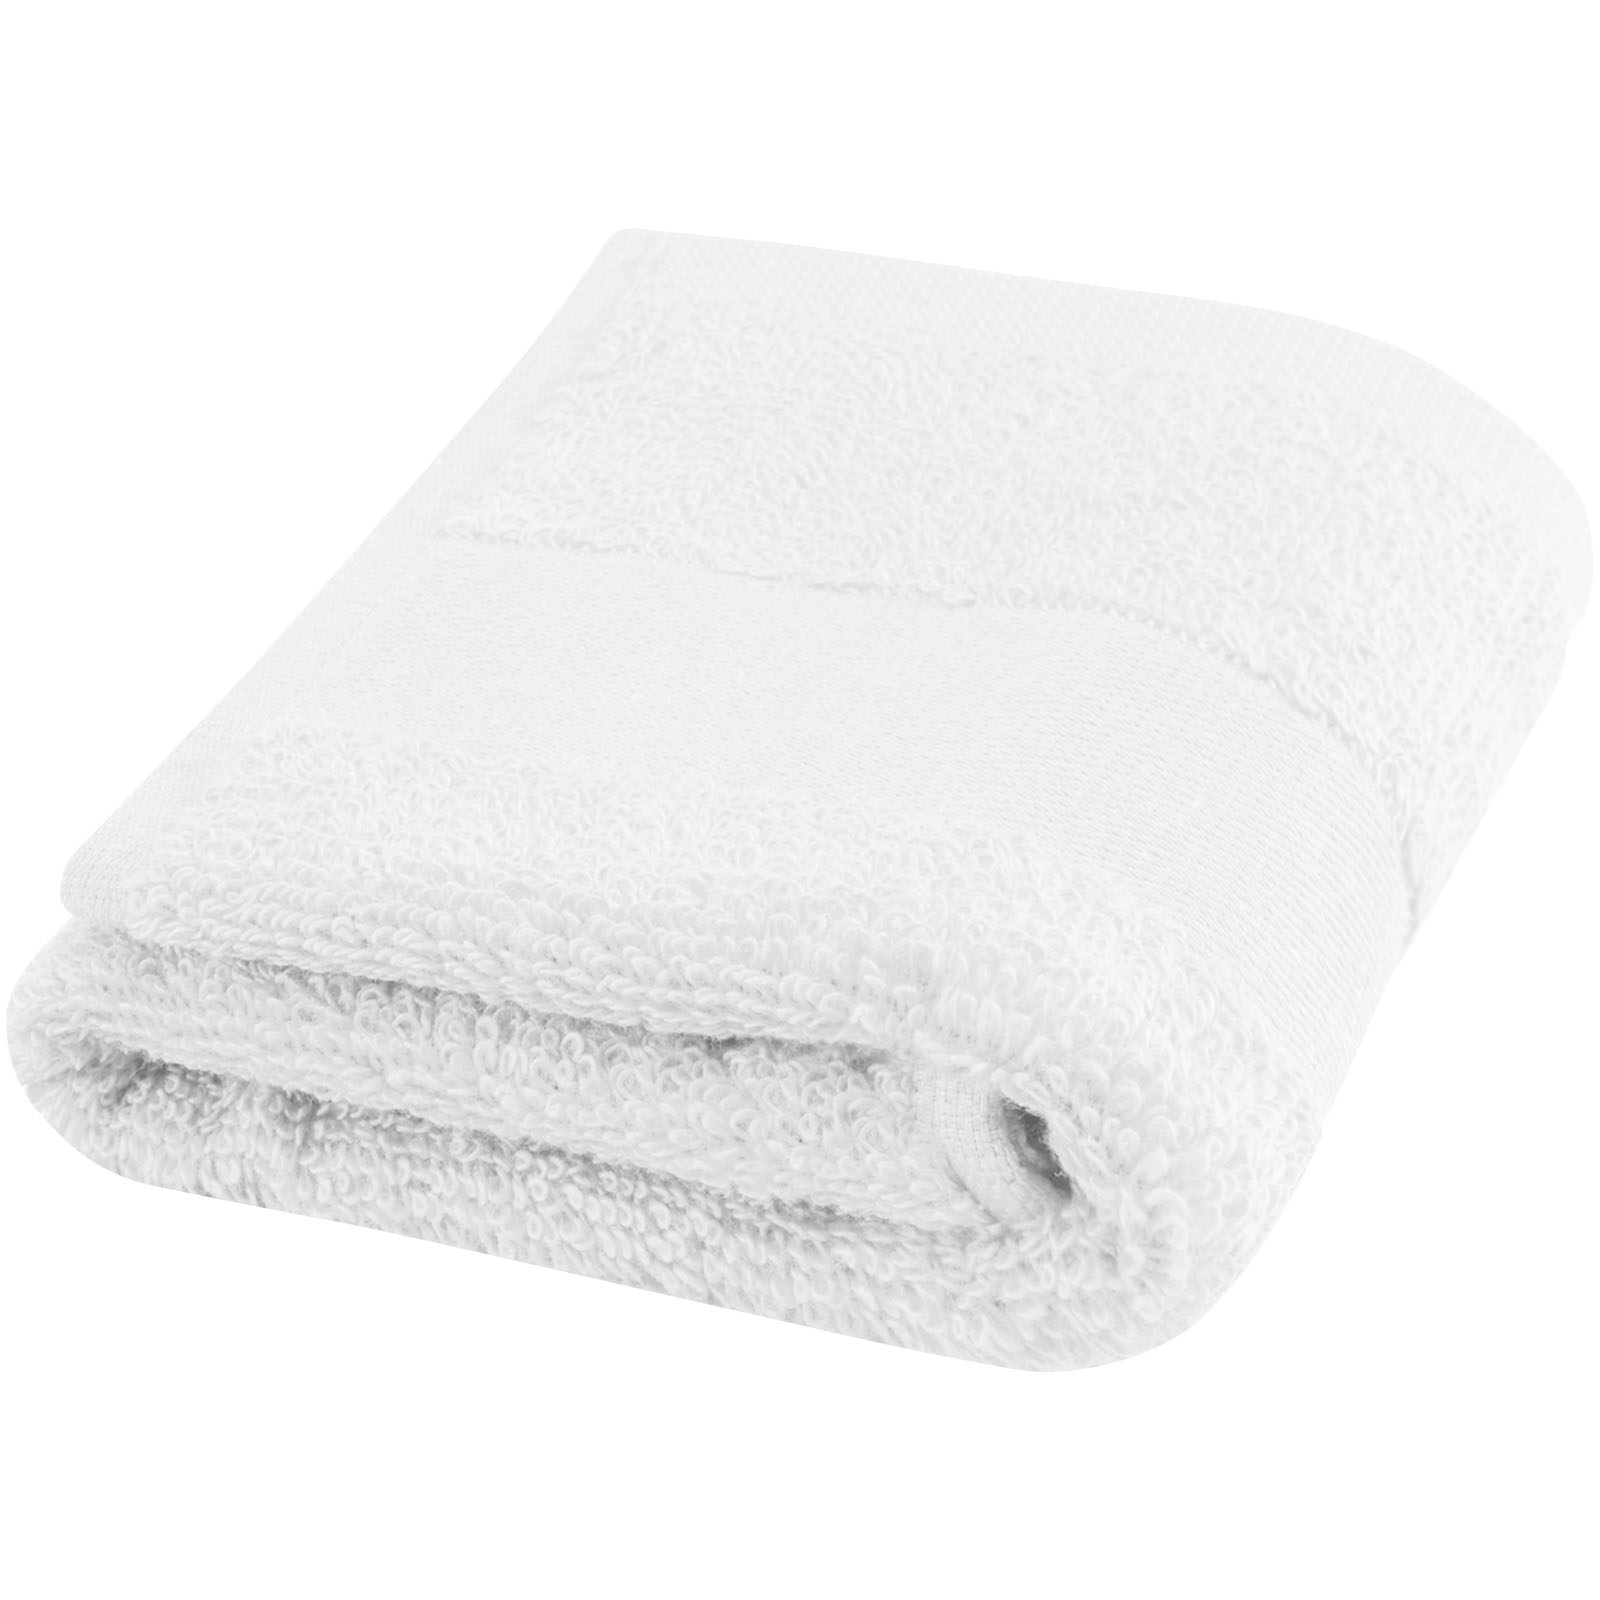 Towels - Sophia 450 g/m² cotton towel 30x50 cm